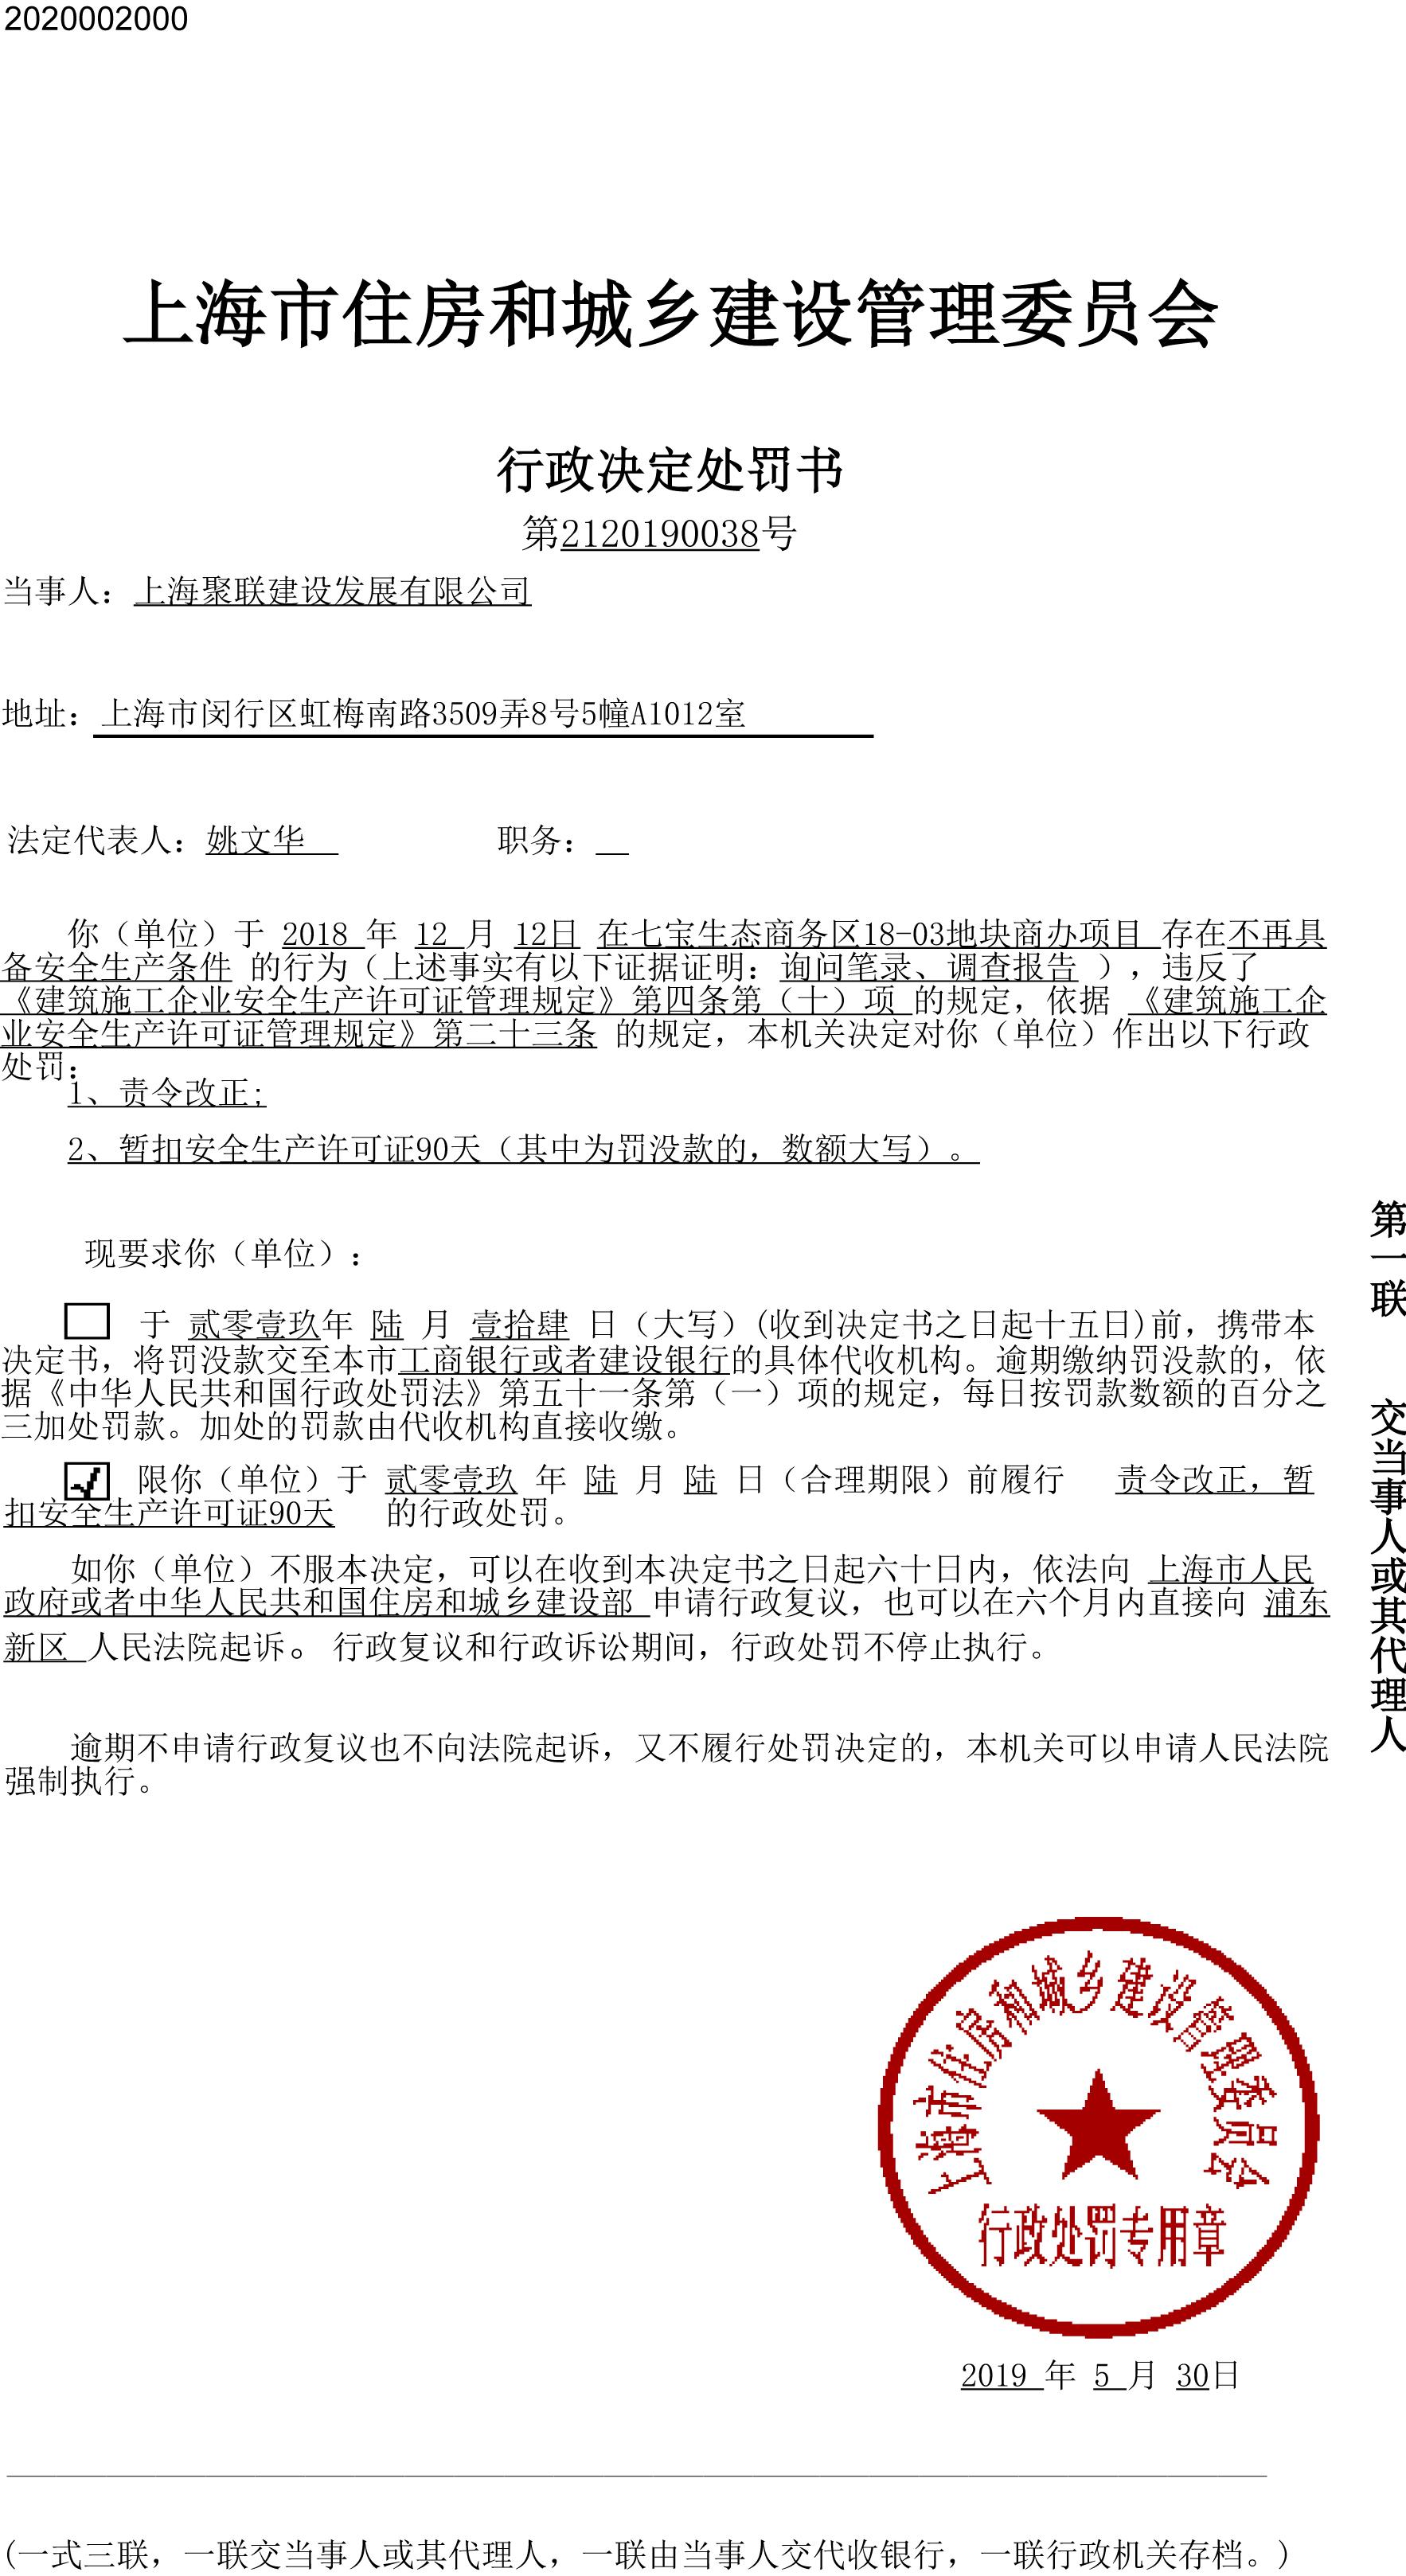 上海聚联建设发展有限公司七宝生态商务区项目存安全隐患被暂扣安全生产许可证90天